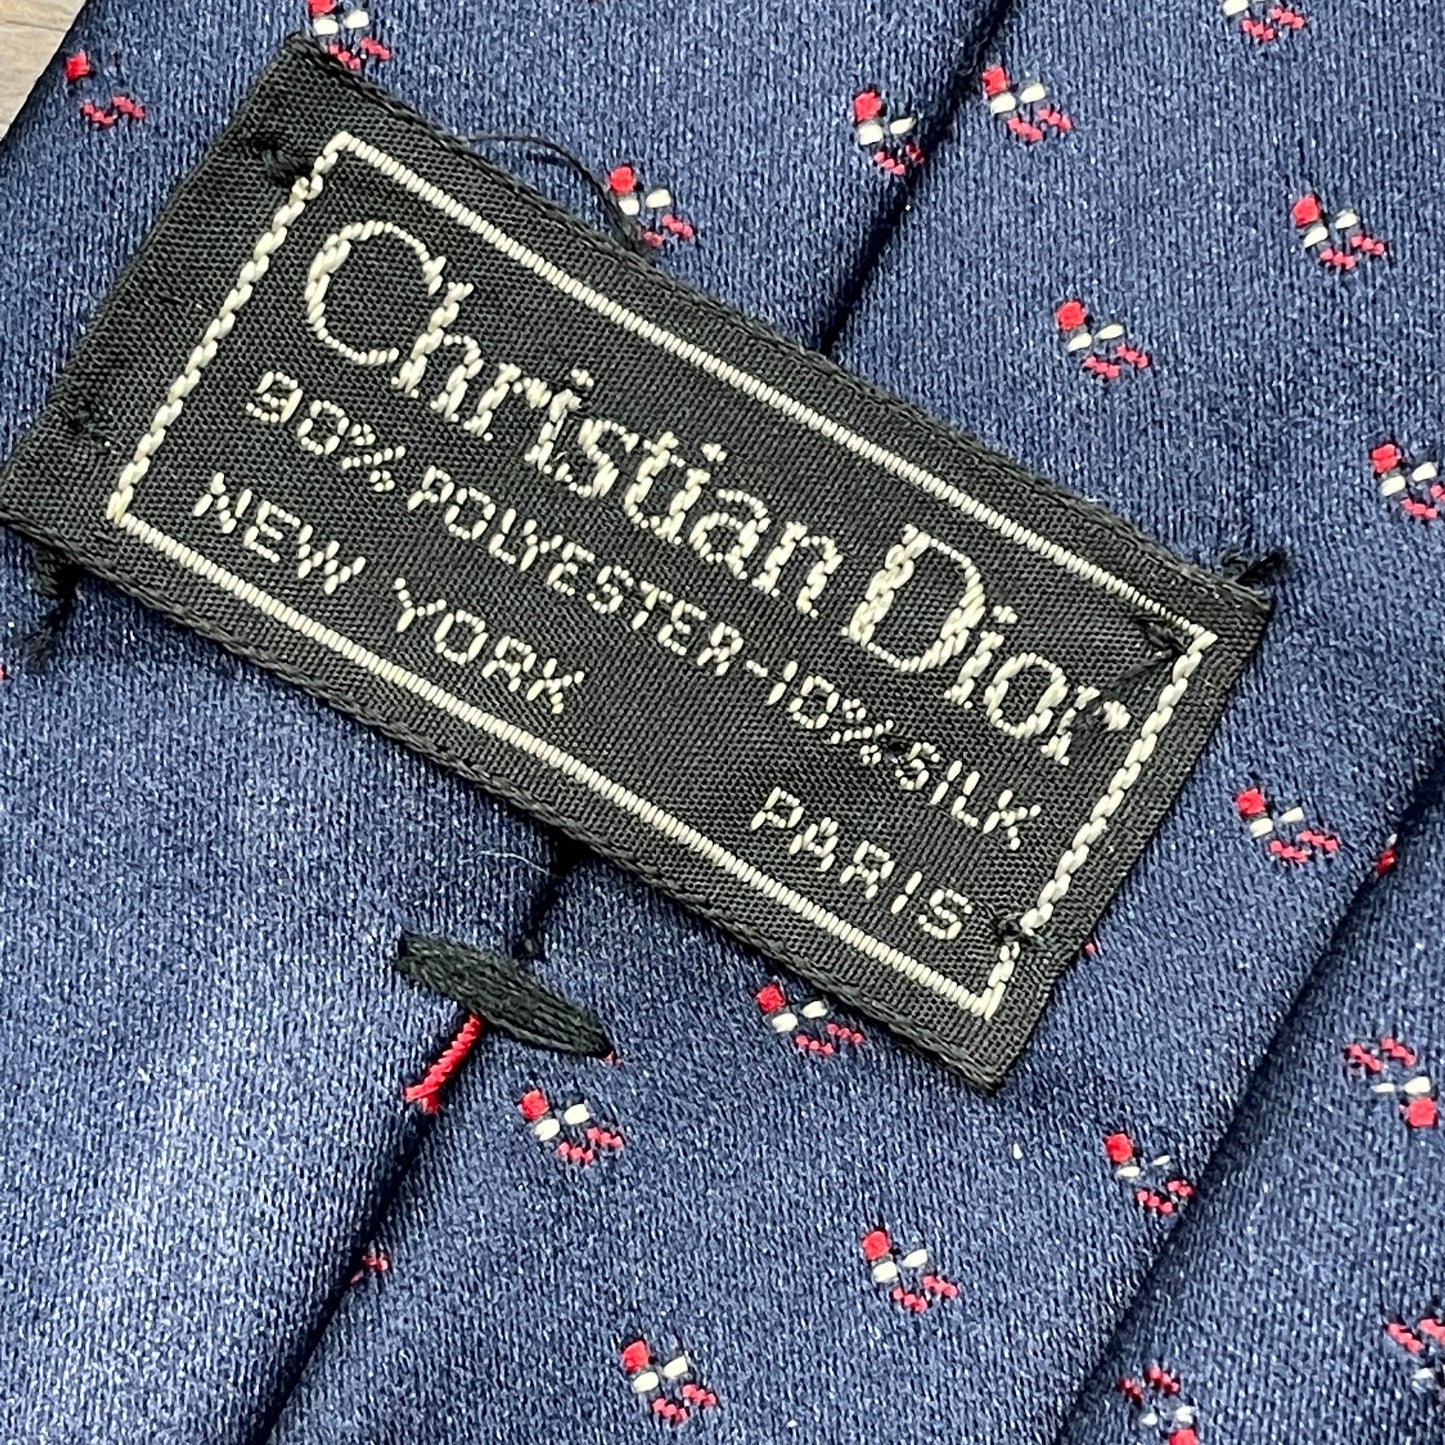 Christian Dior necktie